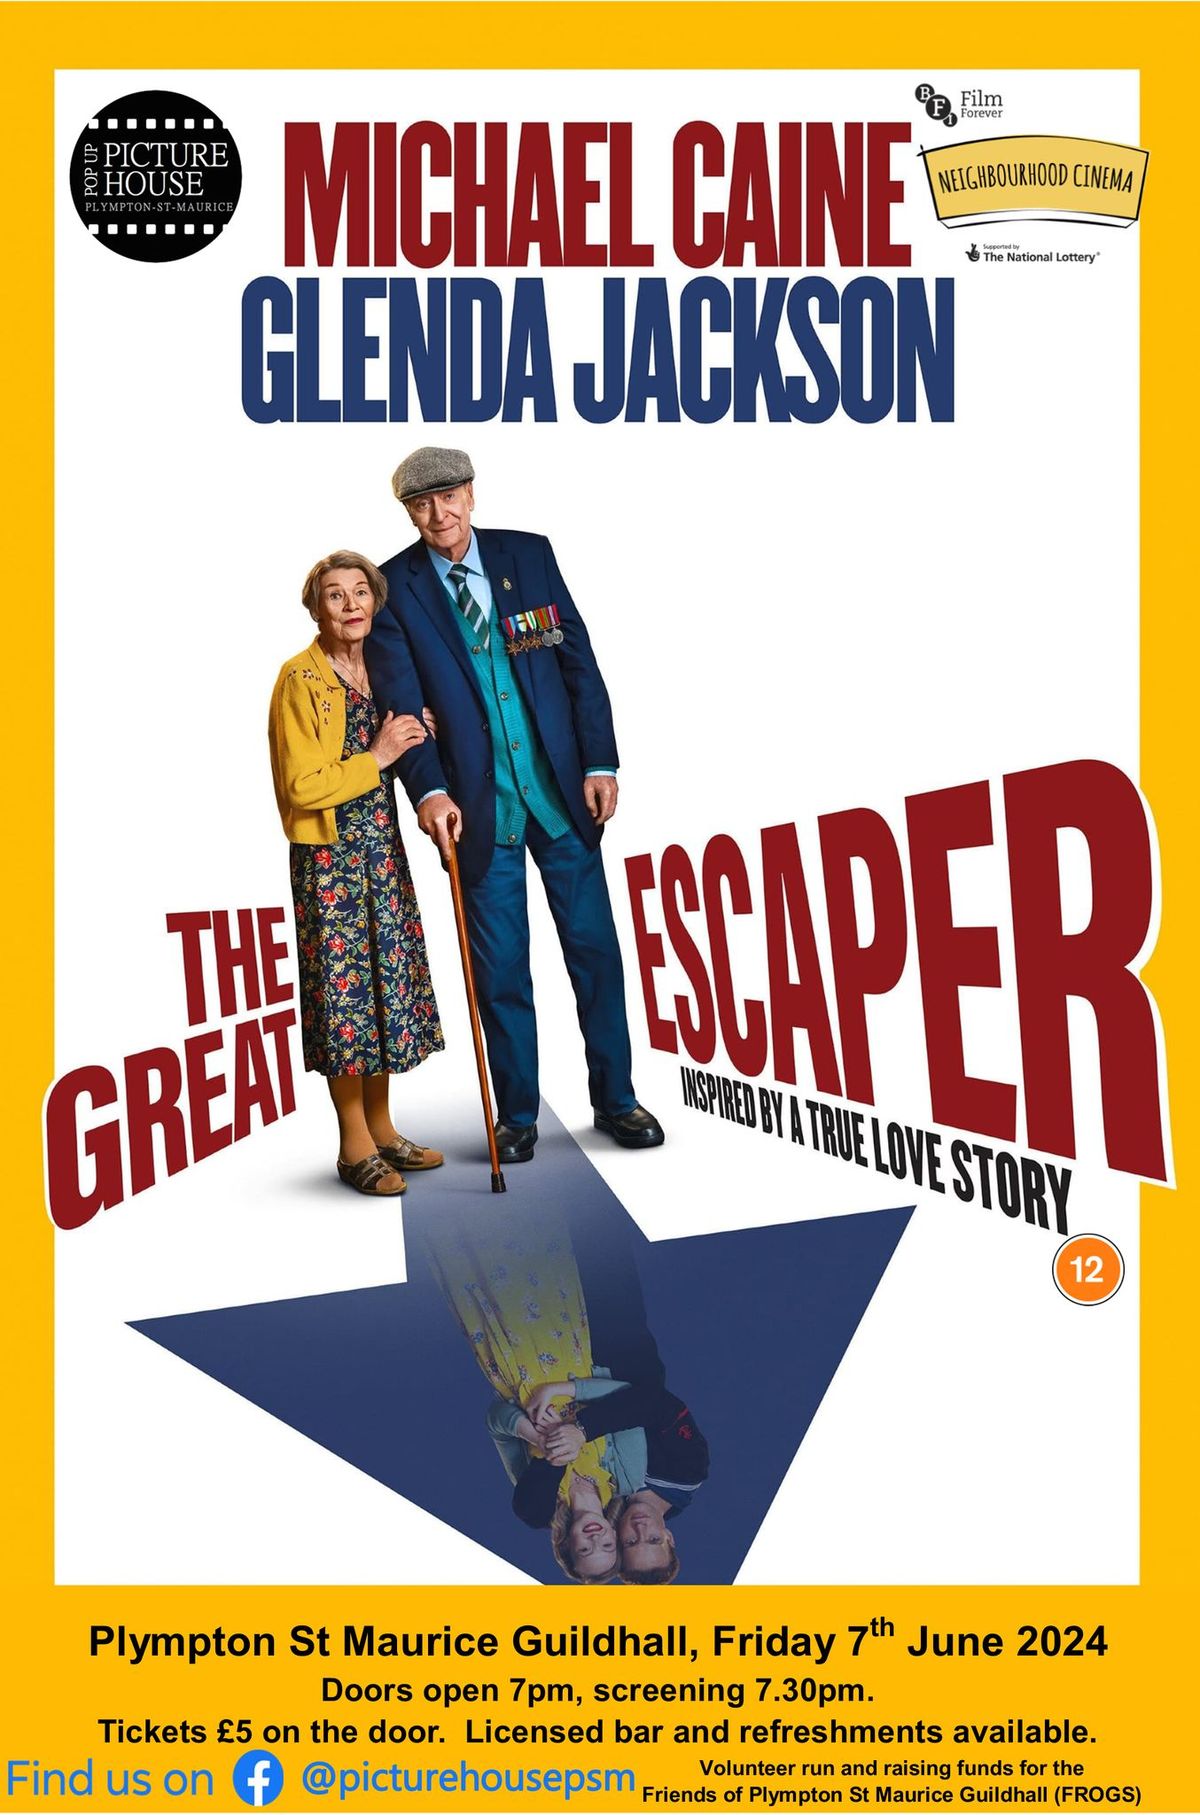 The Great Escaper (12)